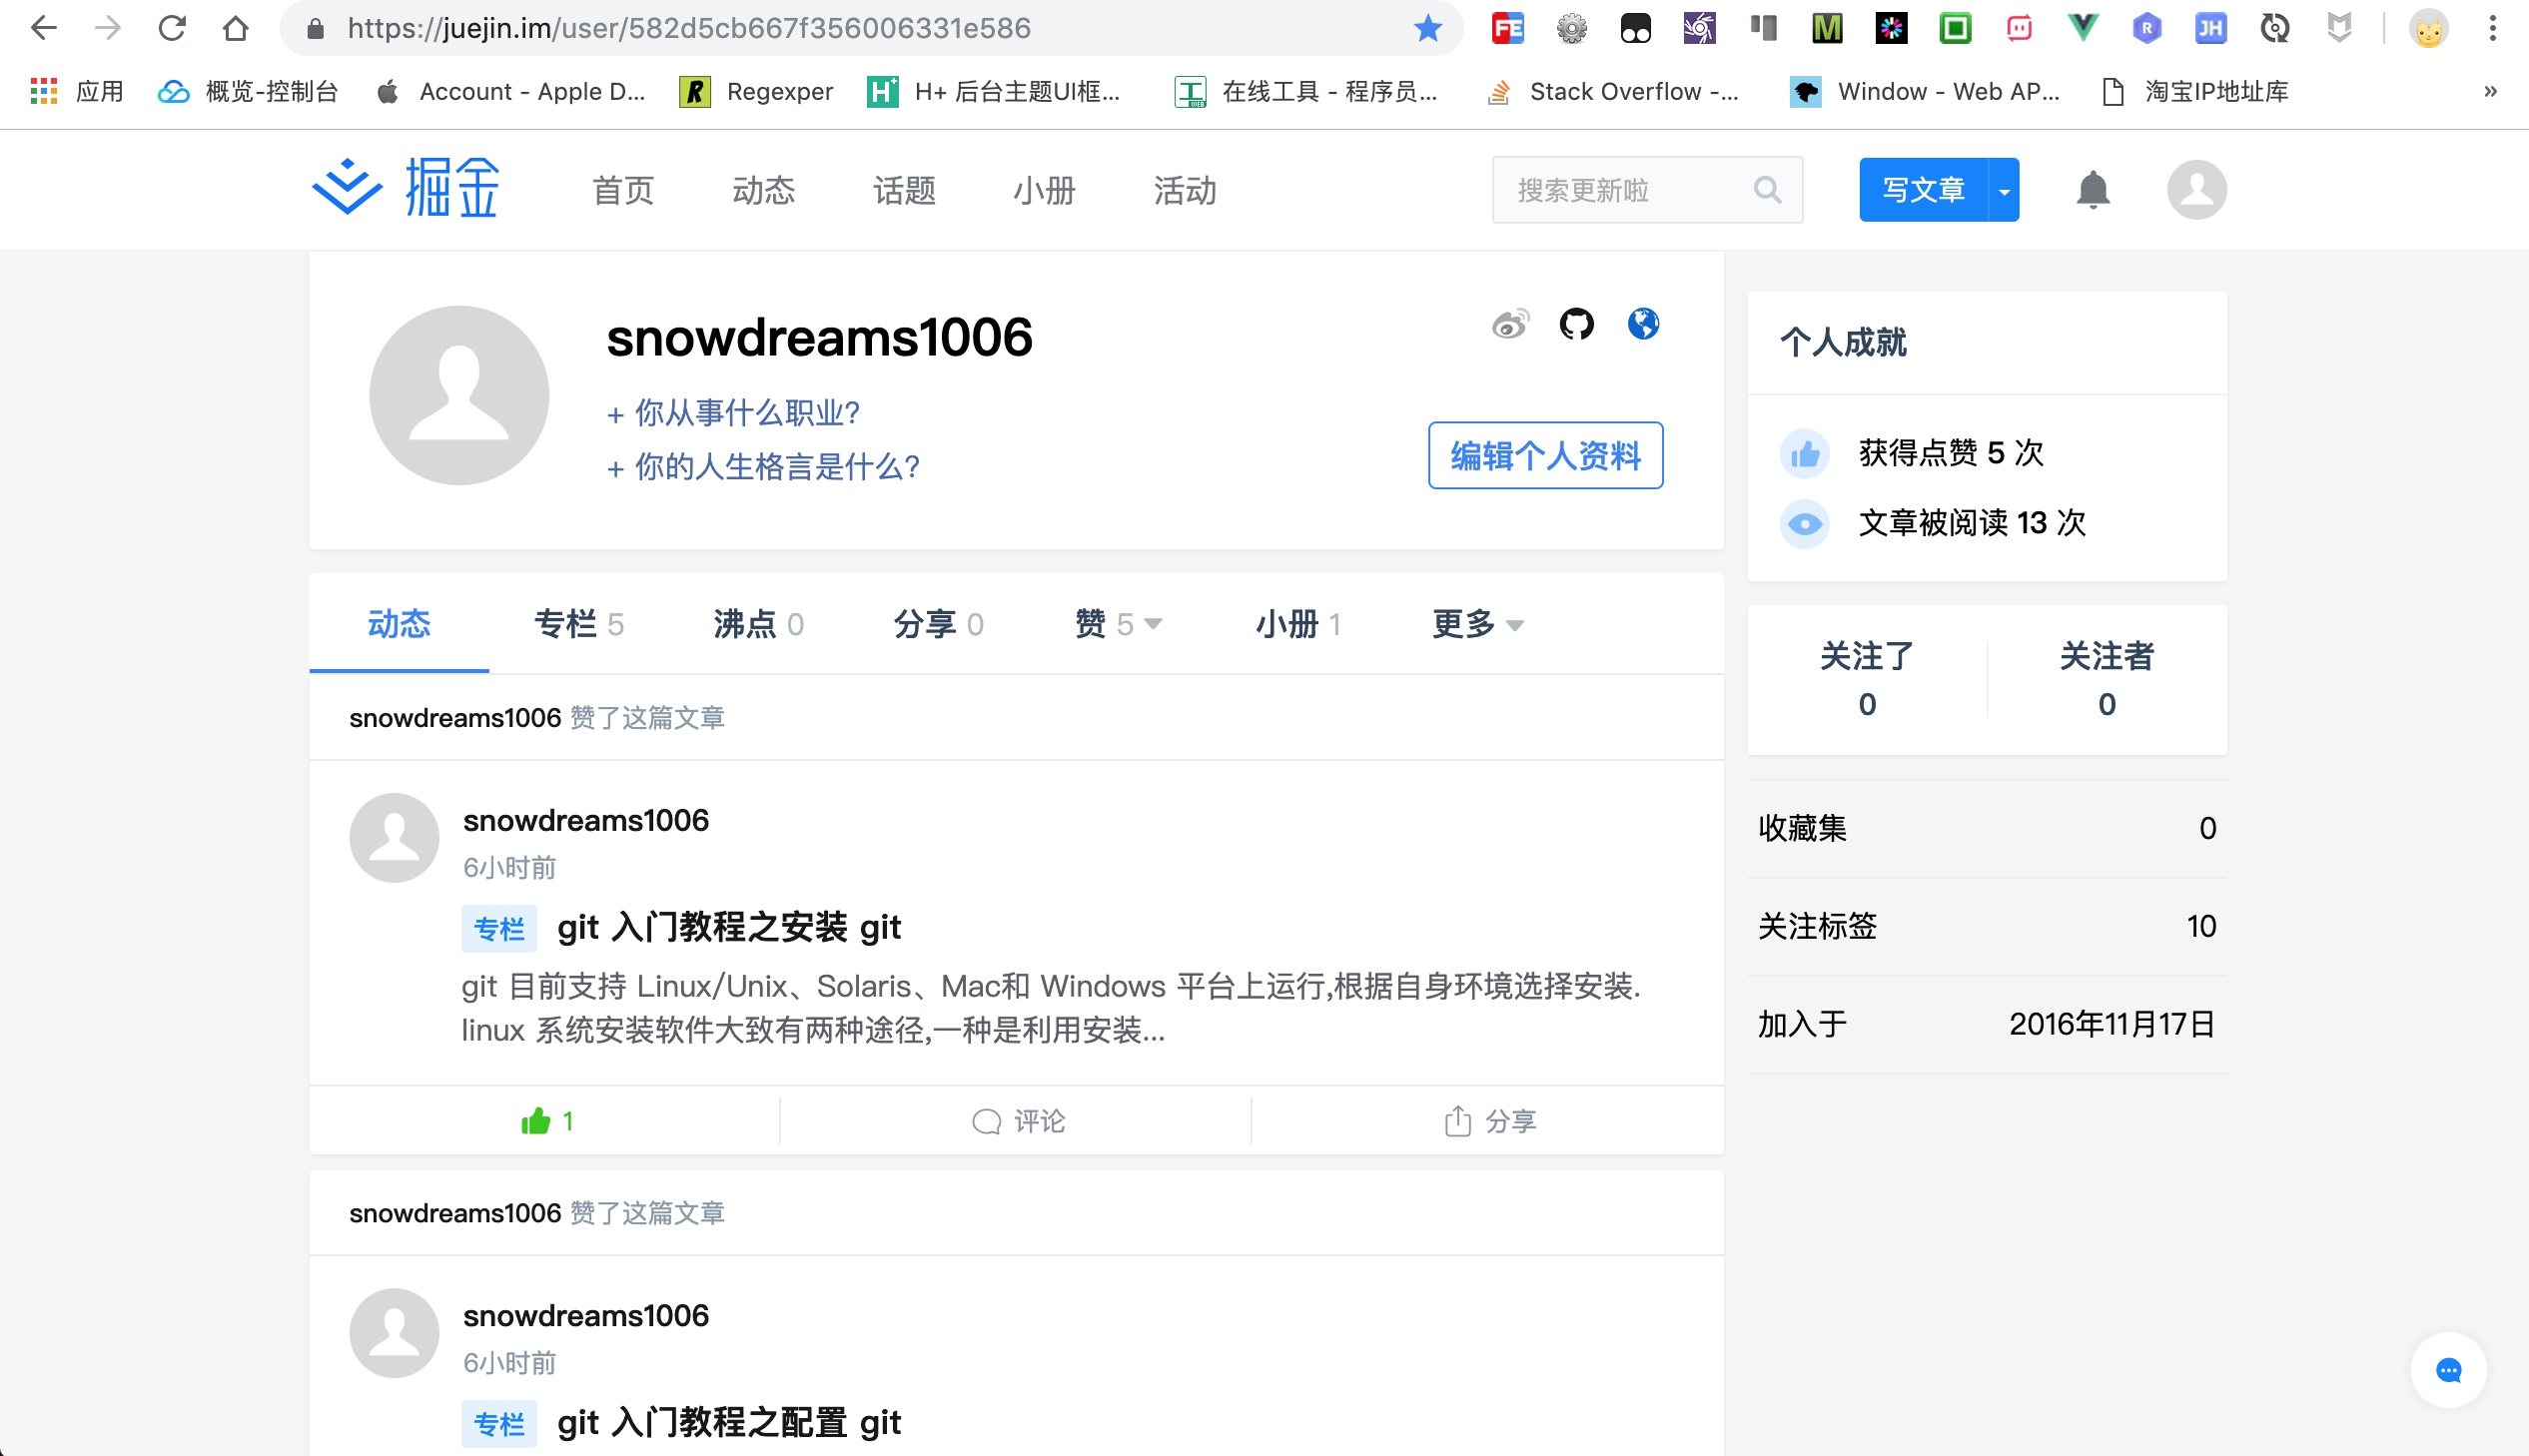 juejin-snowdreams1006.png